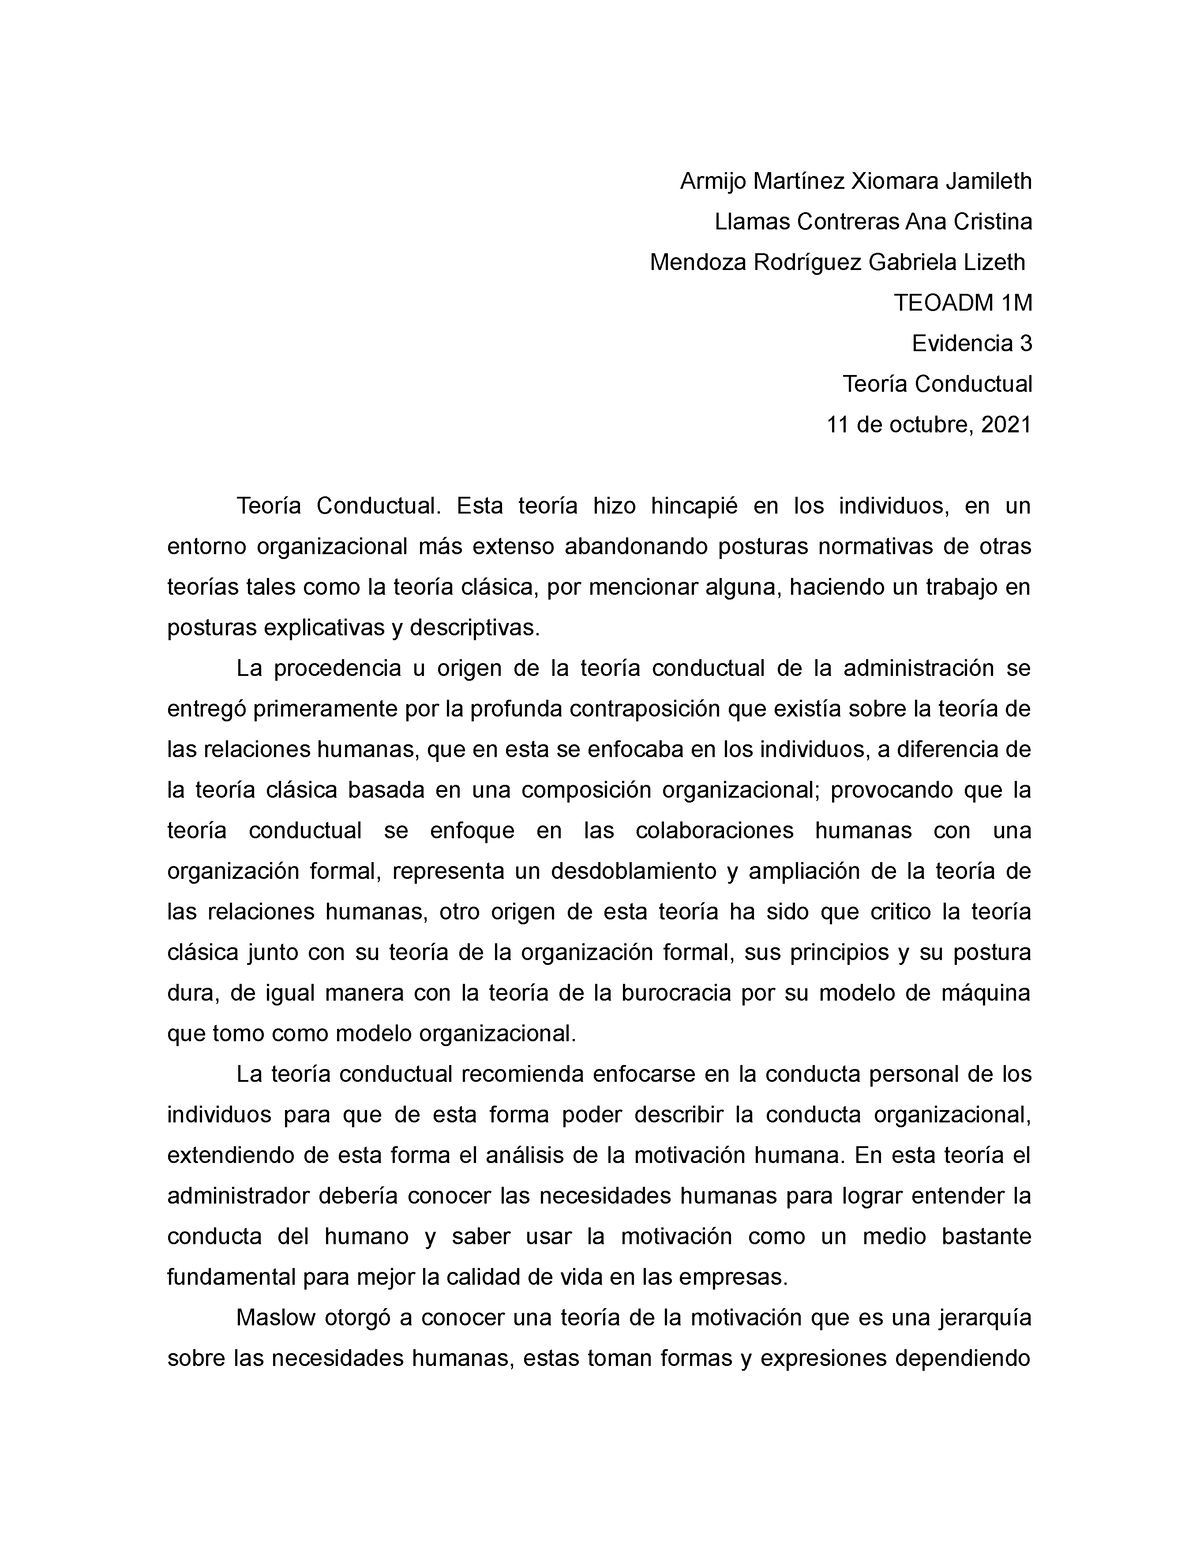 Ev3 Armijo Martínez - EVIDENCIA 3 OTILIA - Teoría Administrativa ...